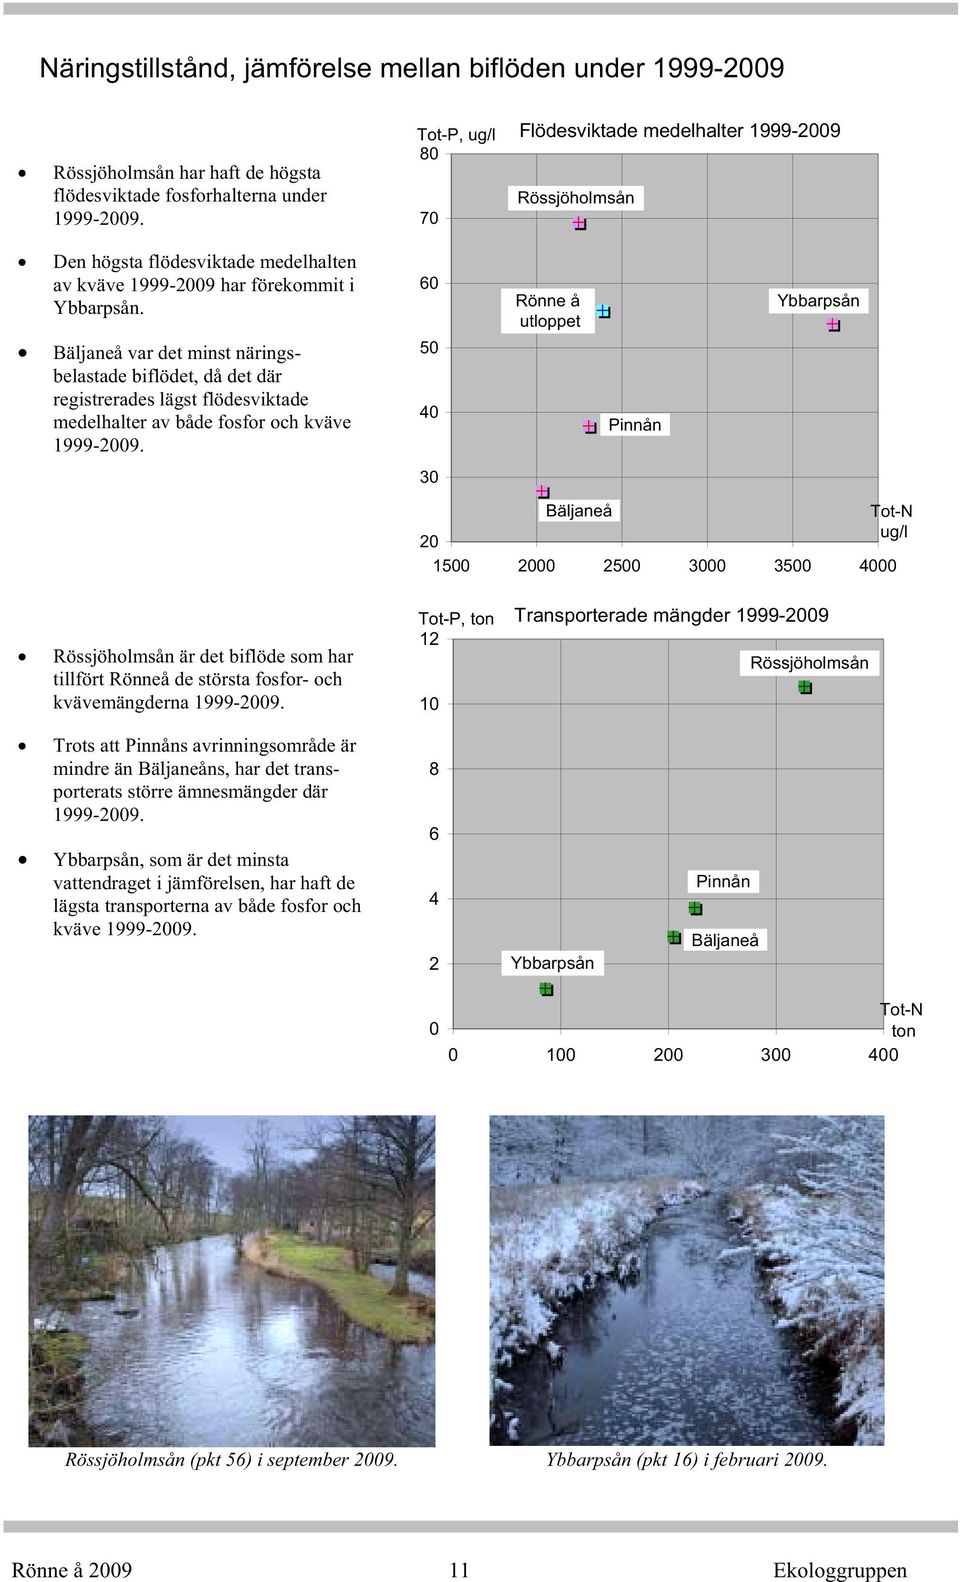 Bäljaneå var det minst näringsbelastade biflödet, då det där registrerades lägst flödesviktade medelhalter av både fosfor och kväve 1999-29.